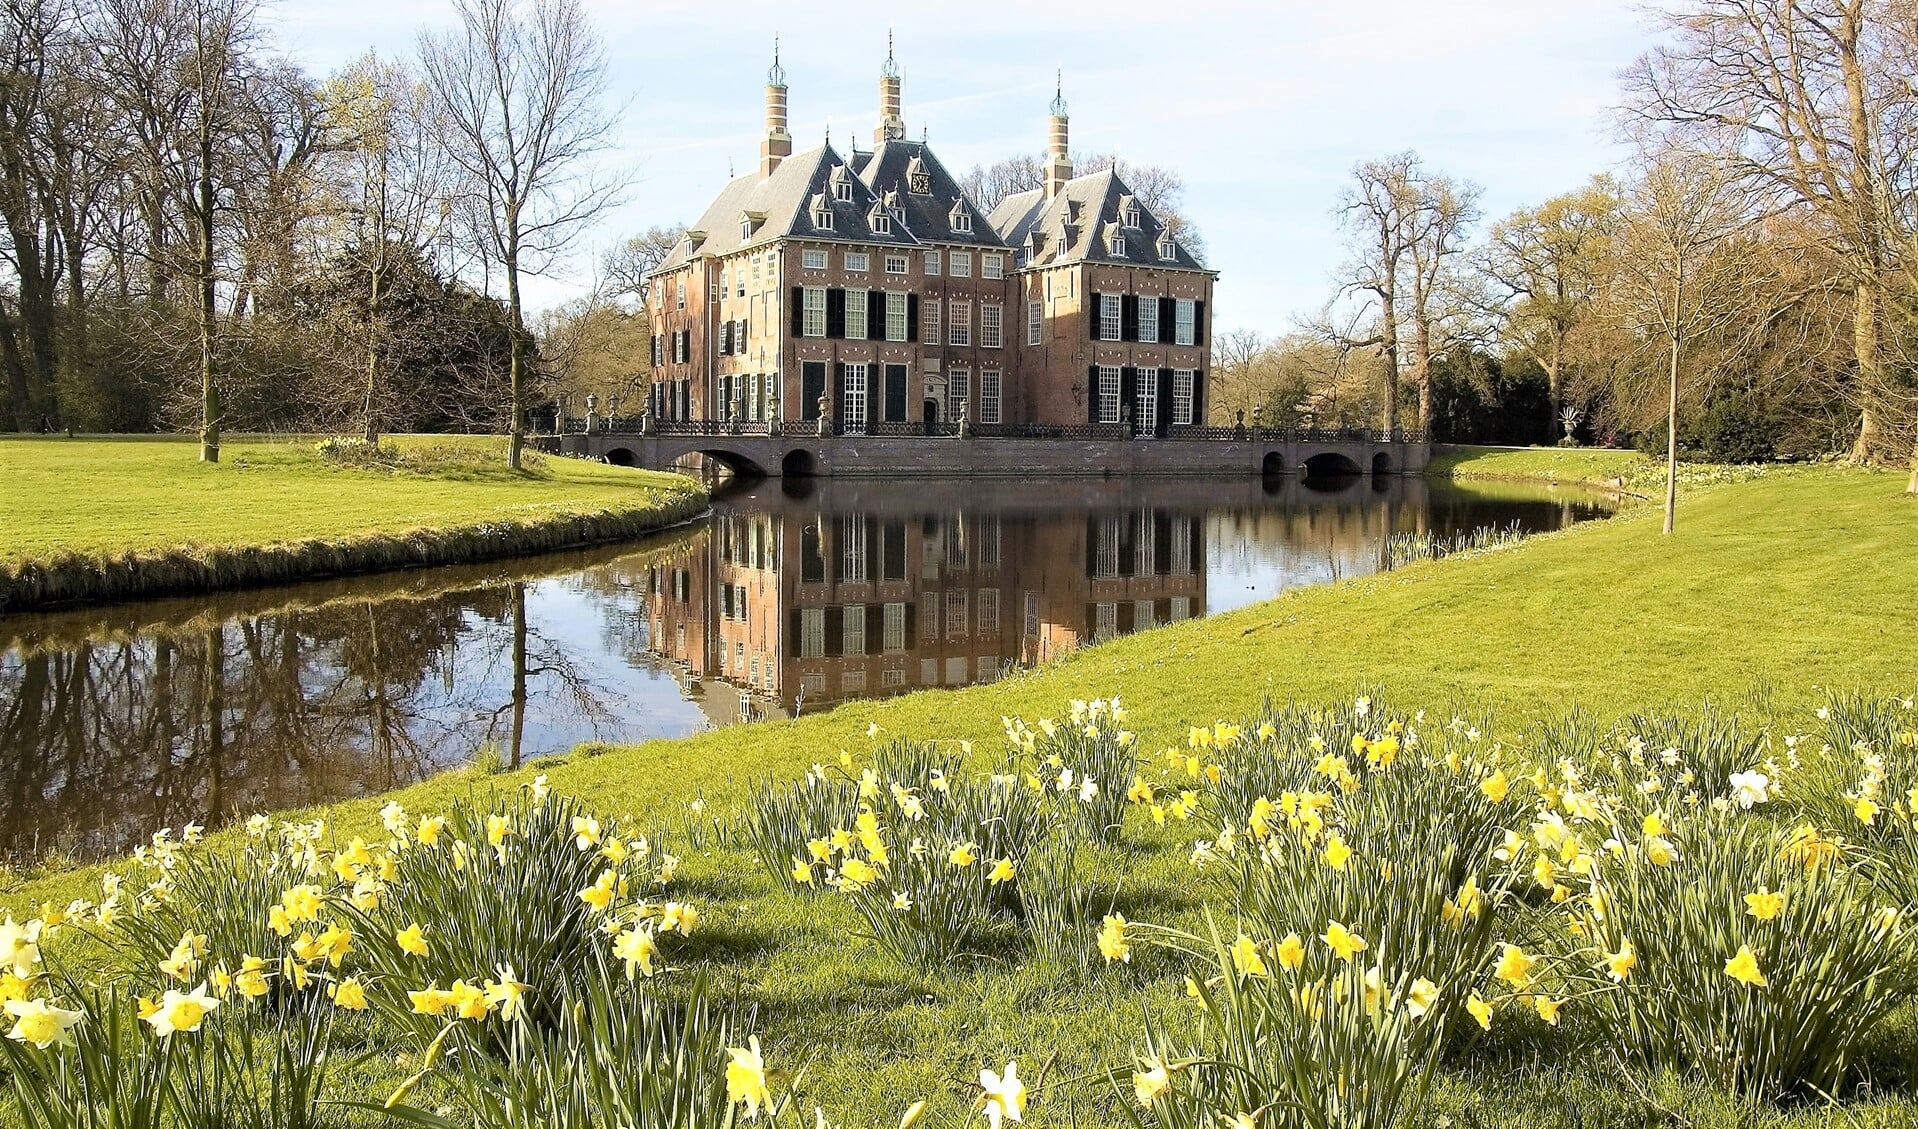 De tuin bij kasteel Duivenvoorde met narcissen op de voorgrond (foto: pr Stichting Duivenvoorde).